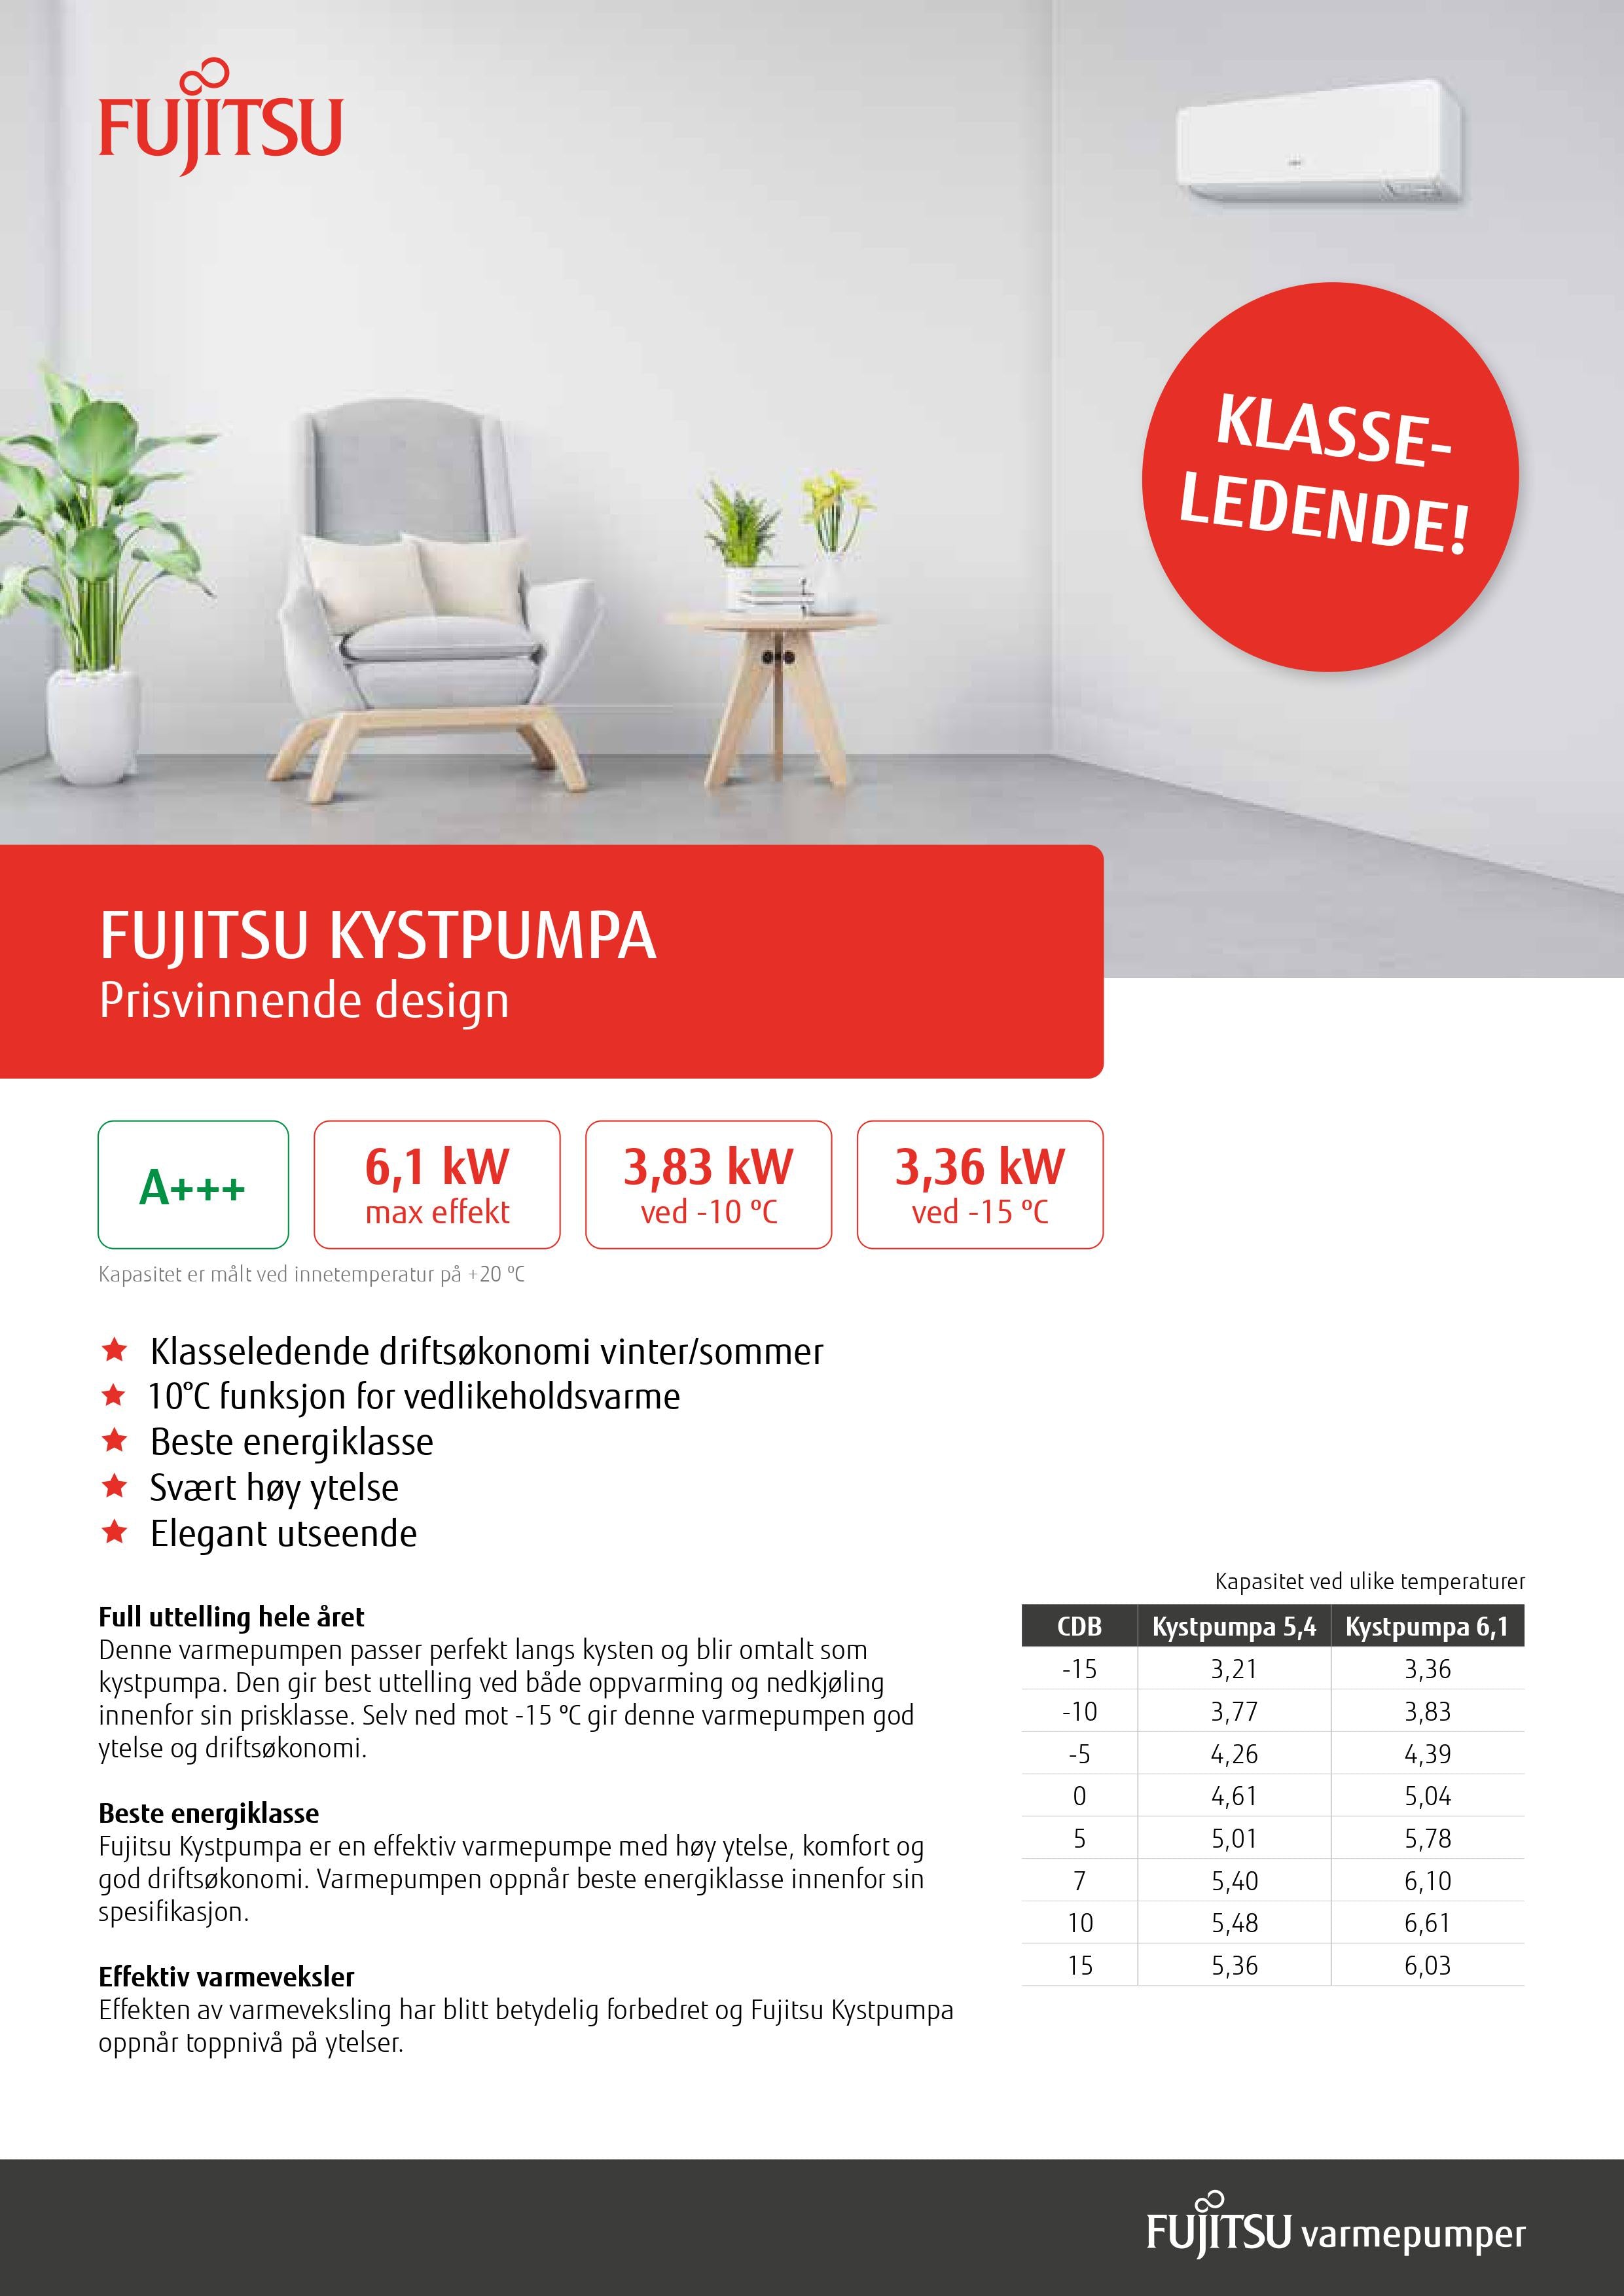 Fujitsu Kystpumpa 6.1 inkludert montasje